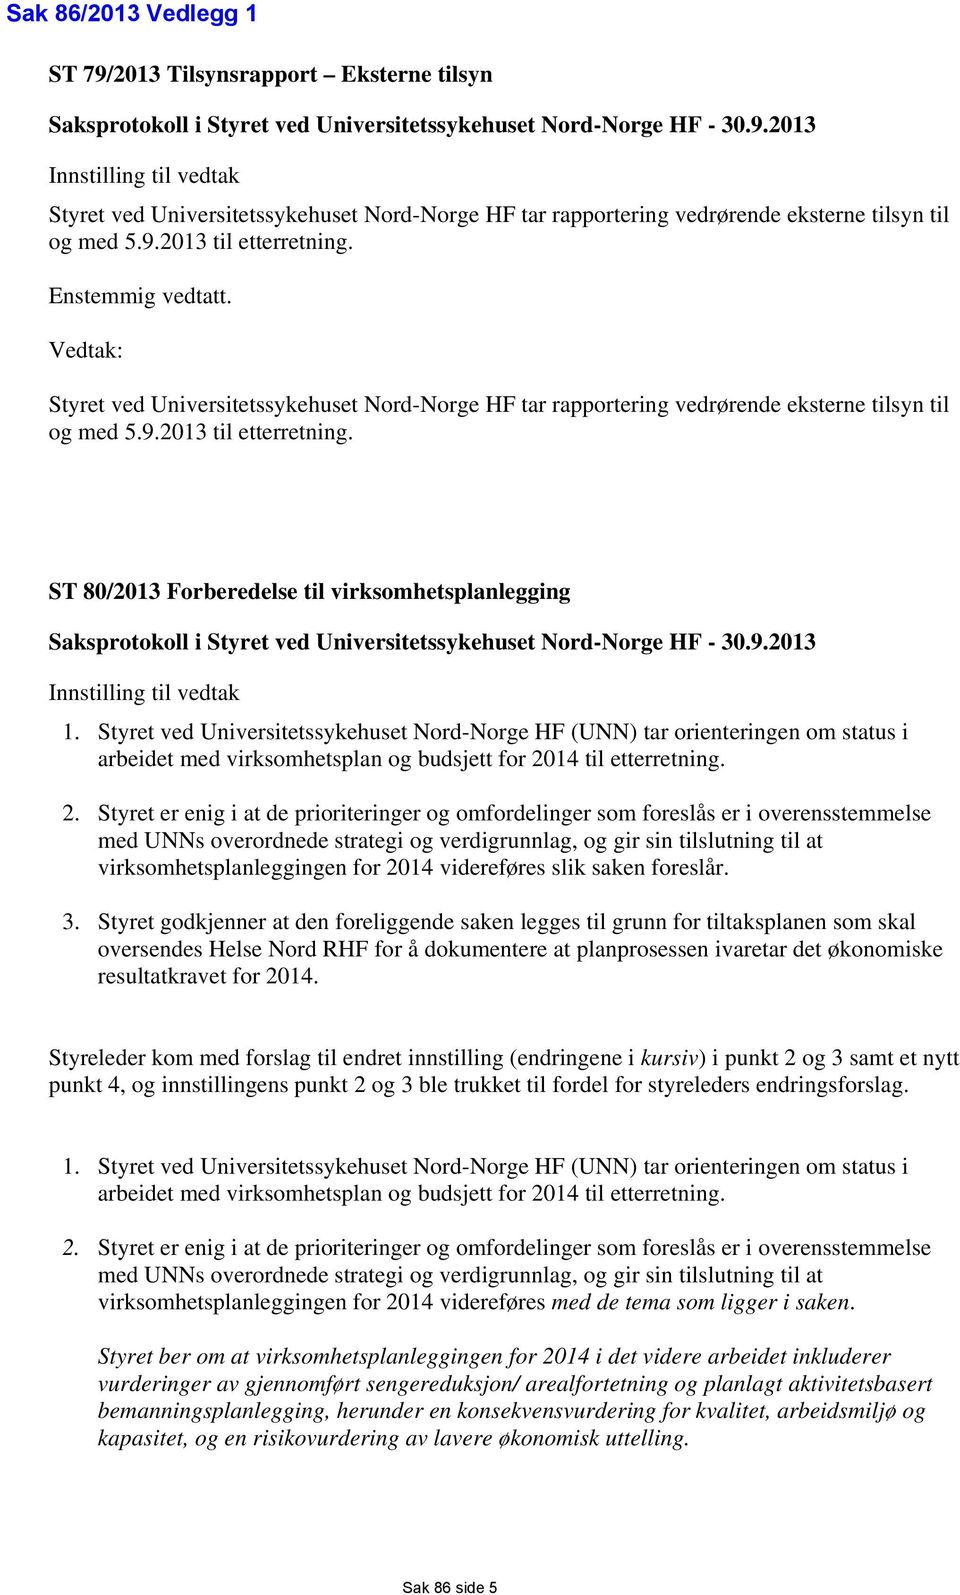 9.2013 Innstilling til vedtak 1. Styret ved Universitetssykehuset Nord-Norge HF (UNN) tar orienteringen om status i arbeidet med virksomhetsplan og budsjett for 20